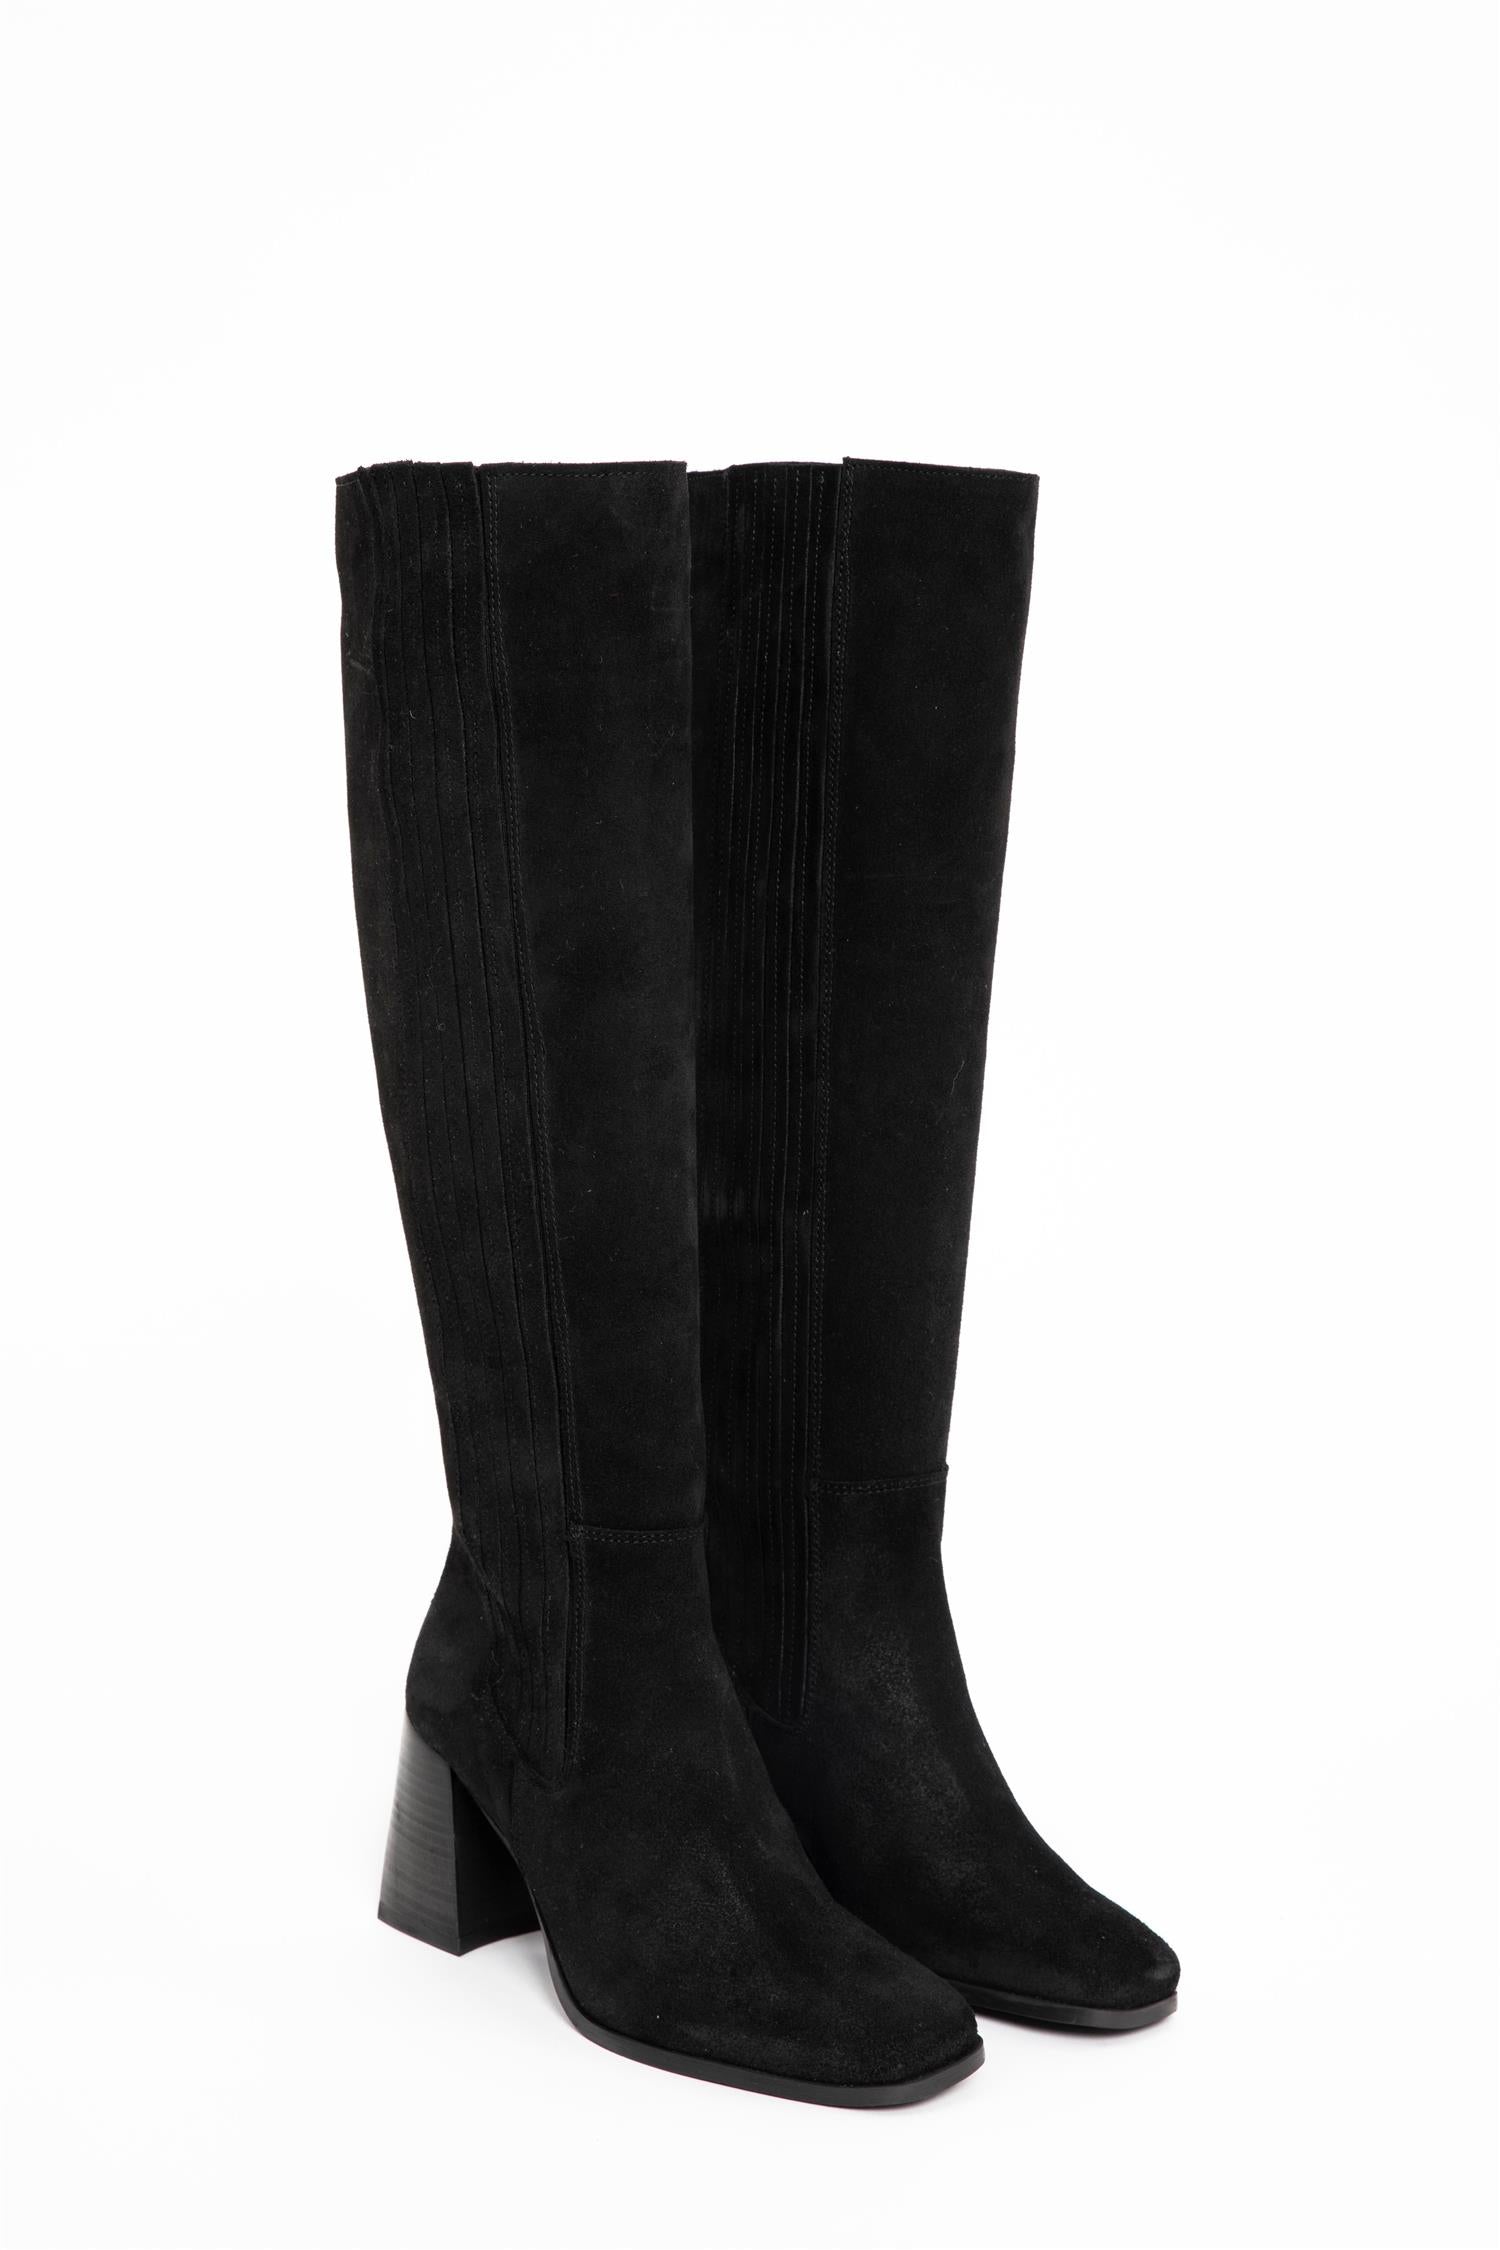 Siwa Suede Knee Boot Black (7254101557445)